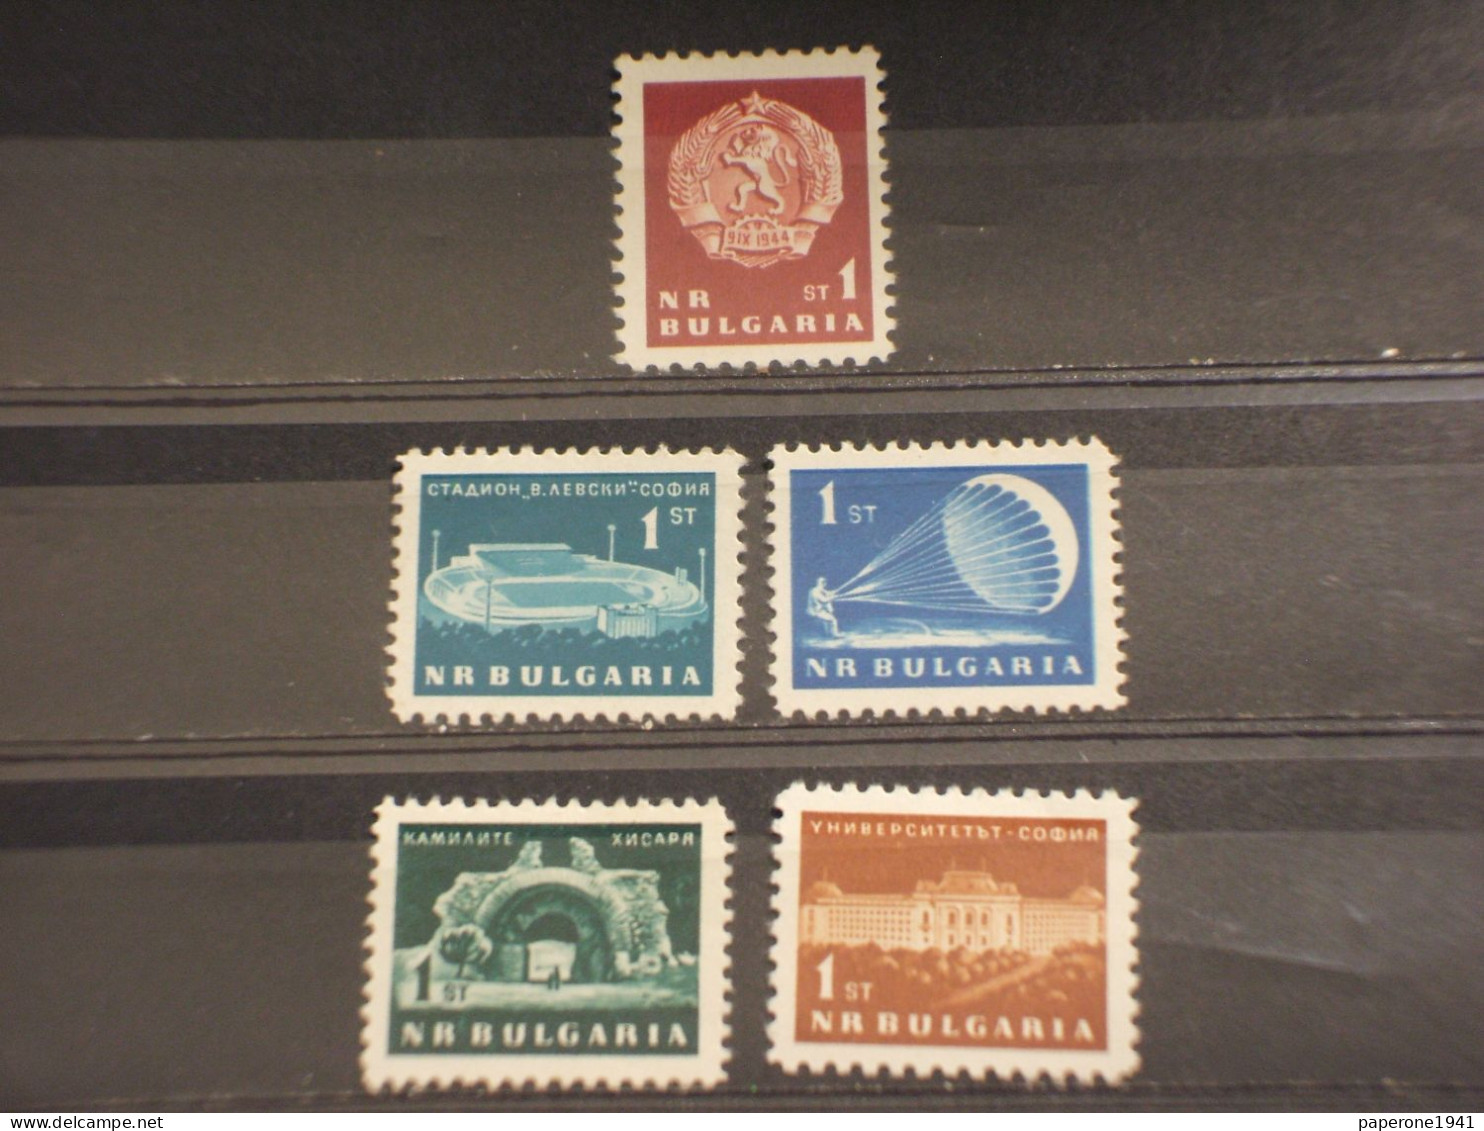 BULGARIA - 1963 VARIE TEMATICHE 5 VALORI - NUOVO (+) - Unused Stamps